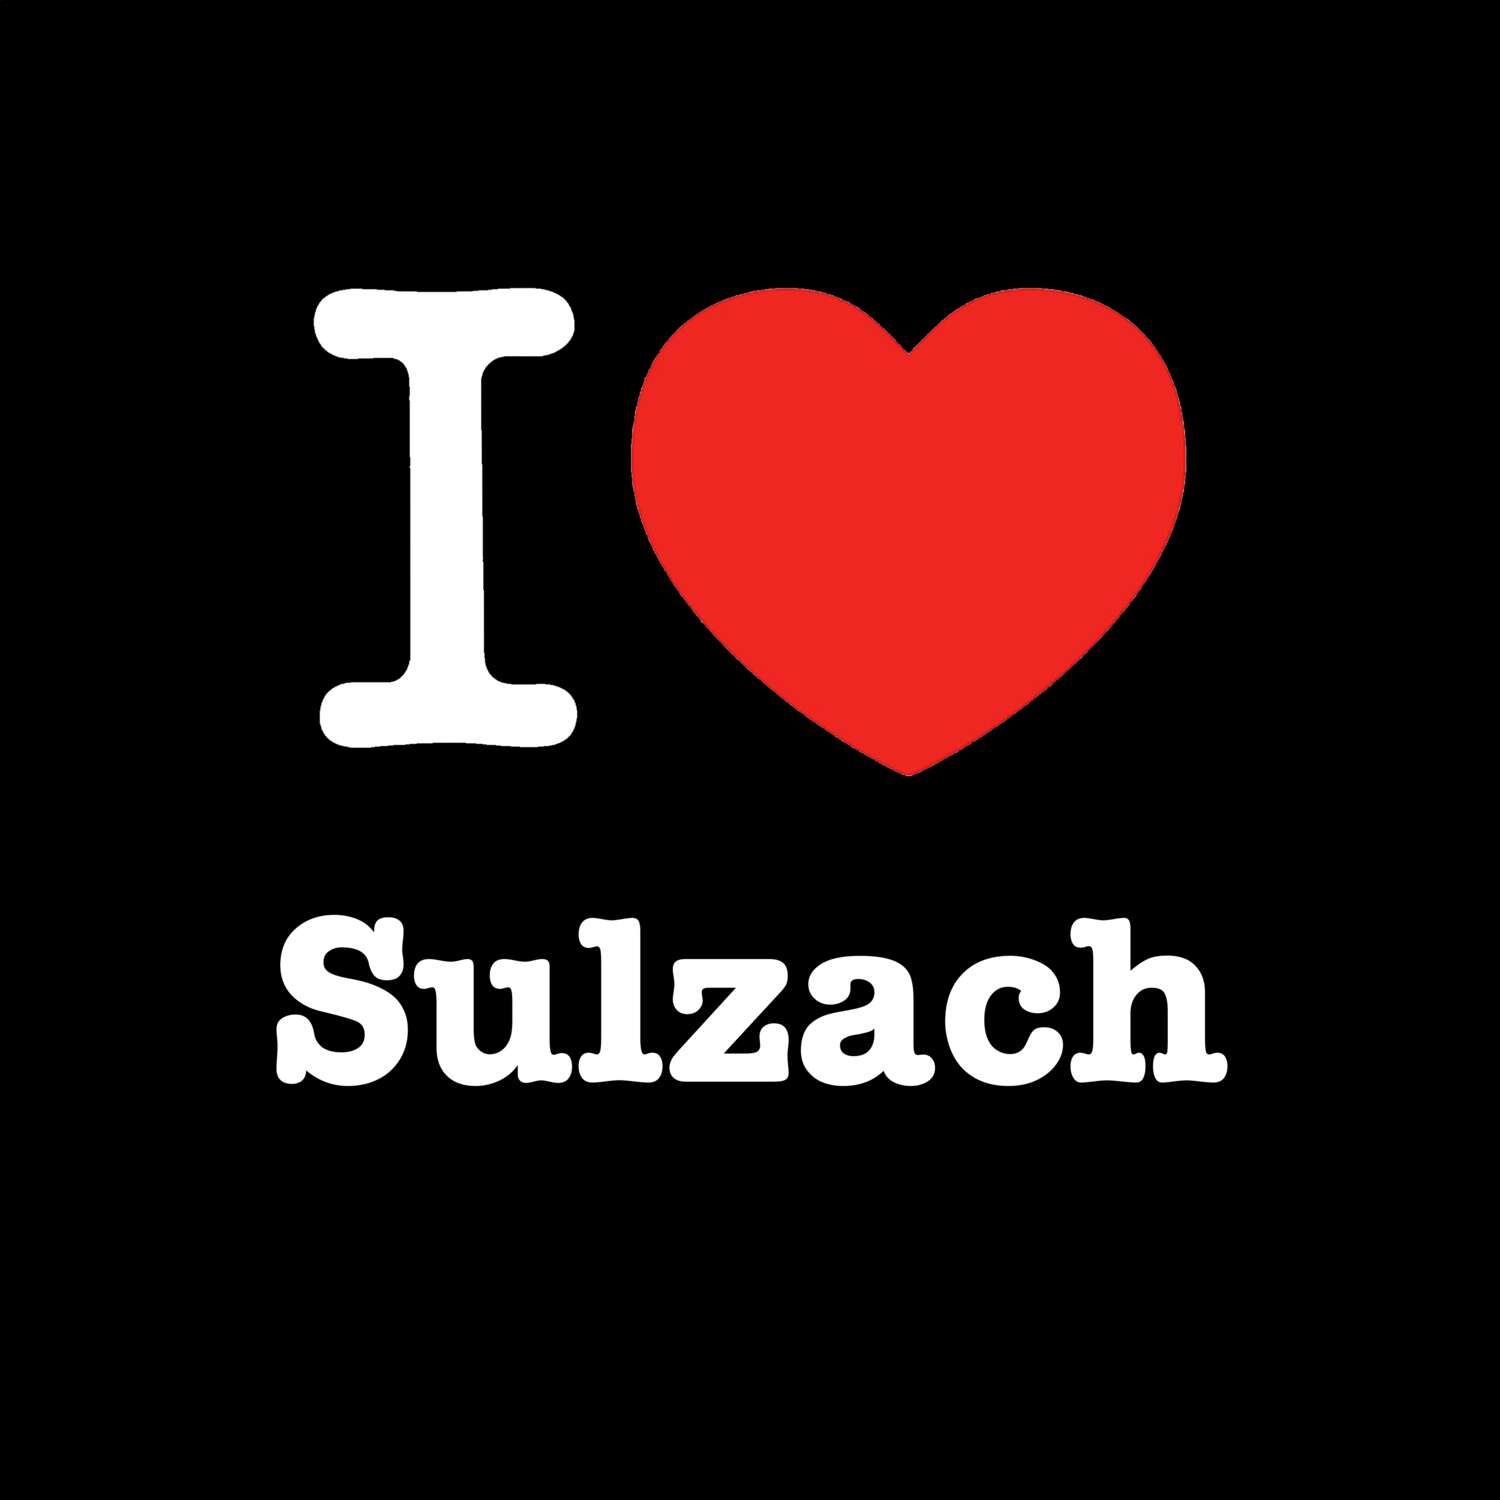 Sulzach T-Shirt »I love«